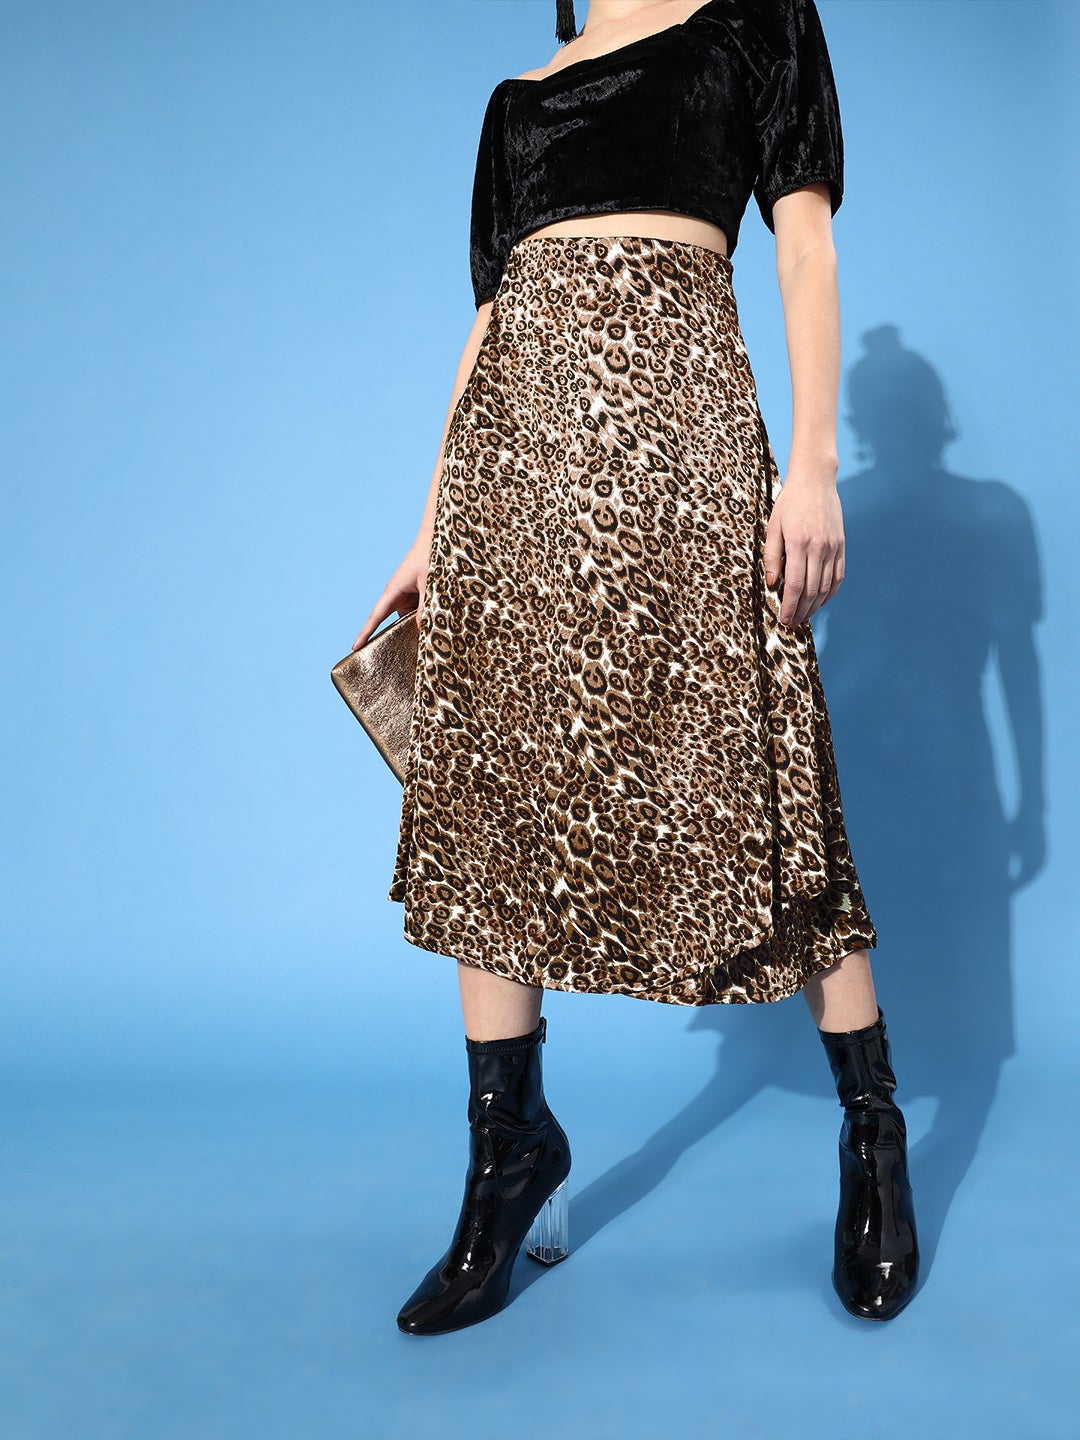 Cheetah Print Satin Skirt